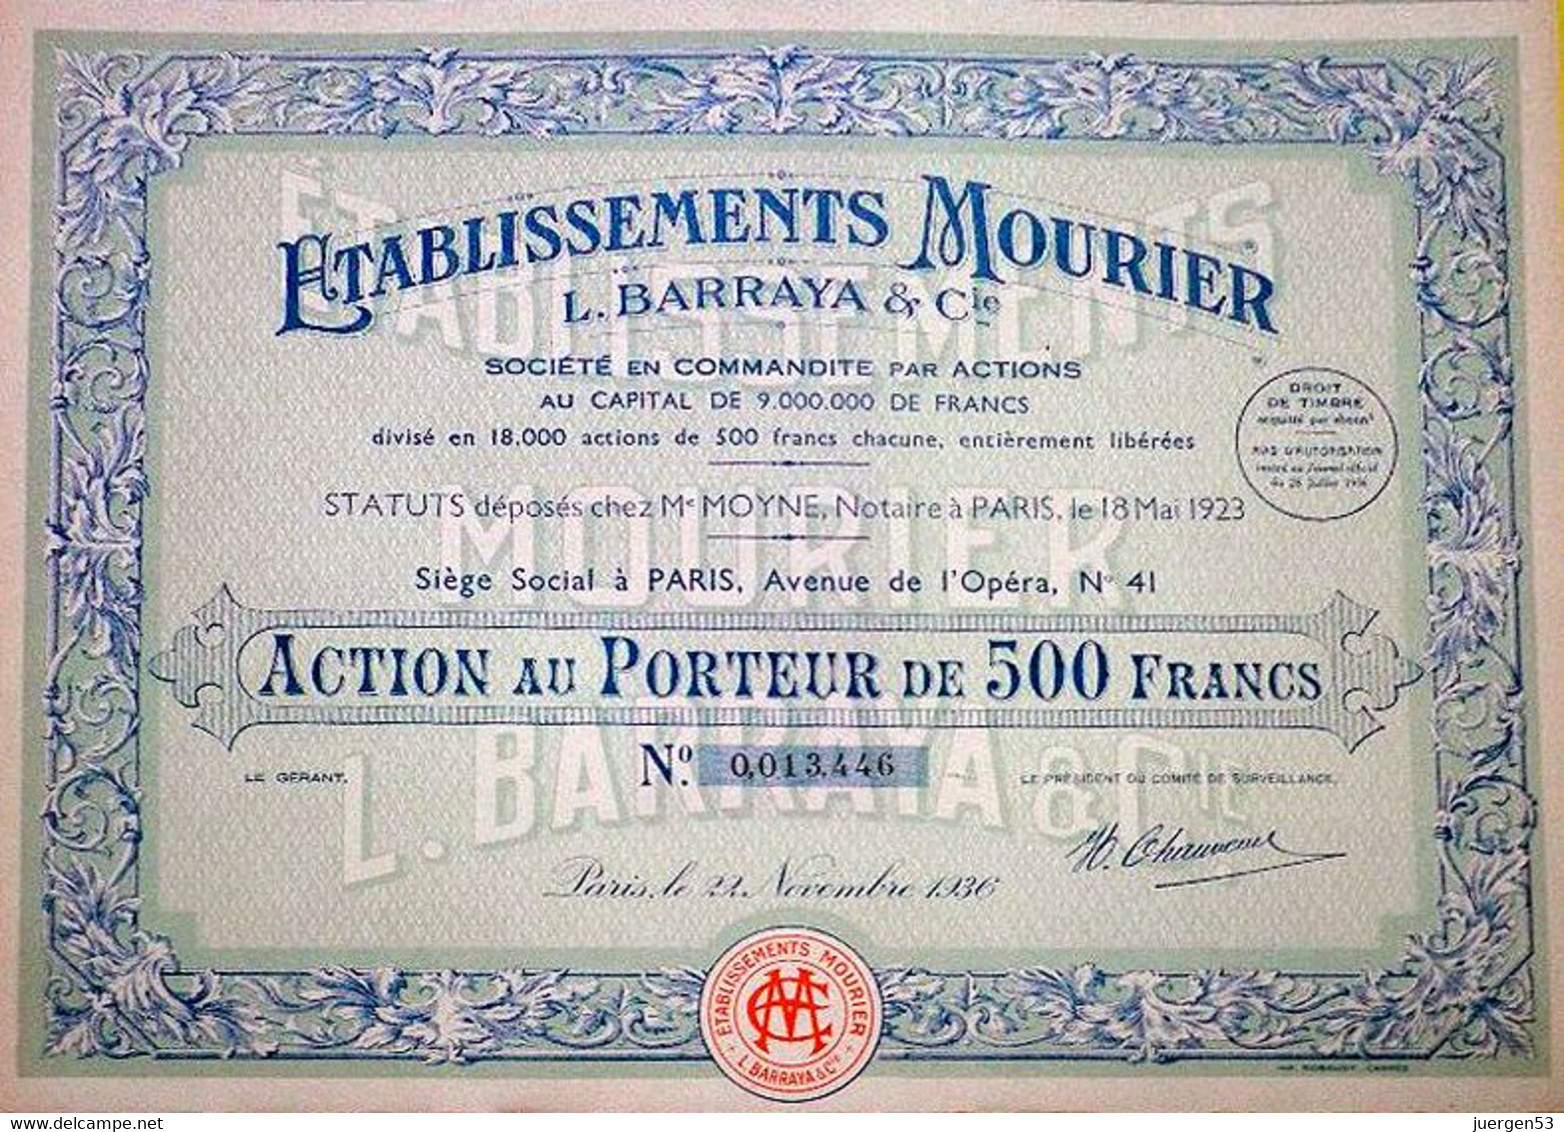 Etablissements MOURIER L. BARRAYA & Cie – 1936 - Tourism